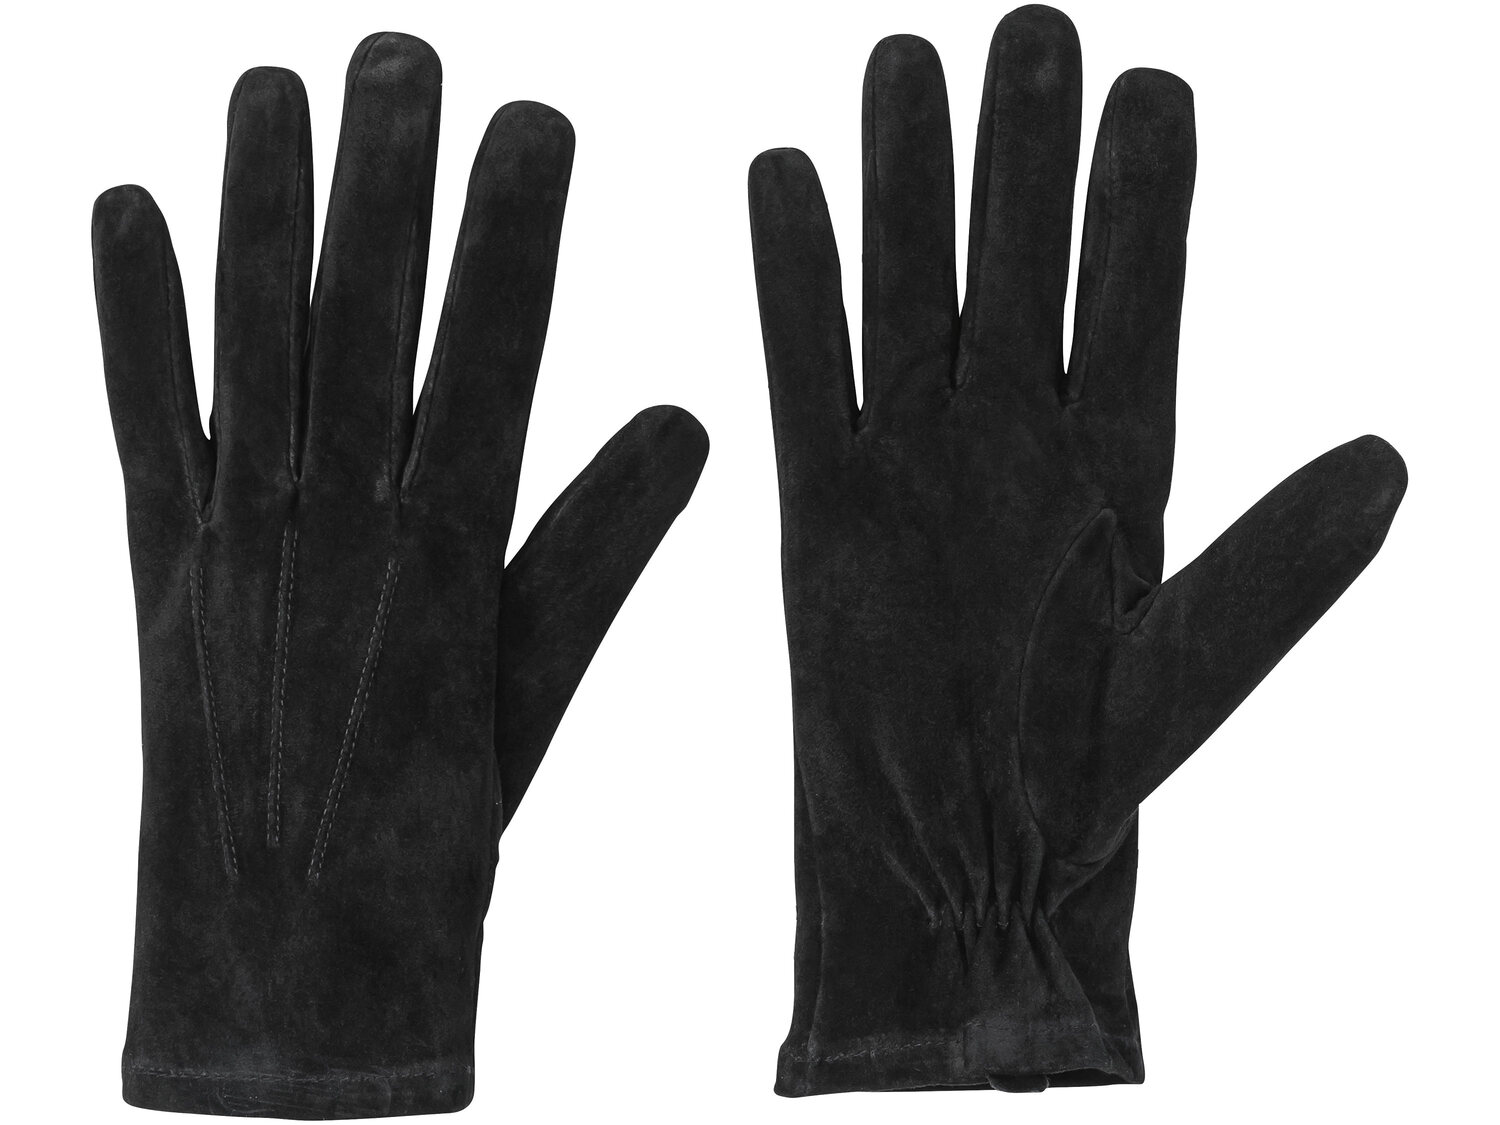 Rękawiczki ze skórą welurową Esmara, cena 24,99 PLN 
3 wzory 
- rozmiary: 7-8
- ...